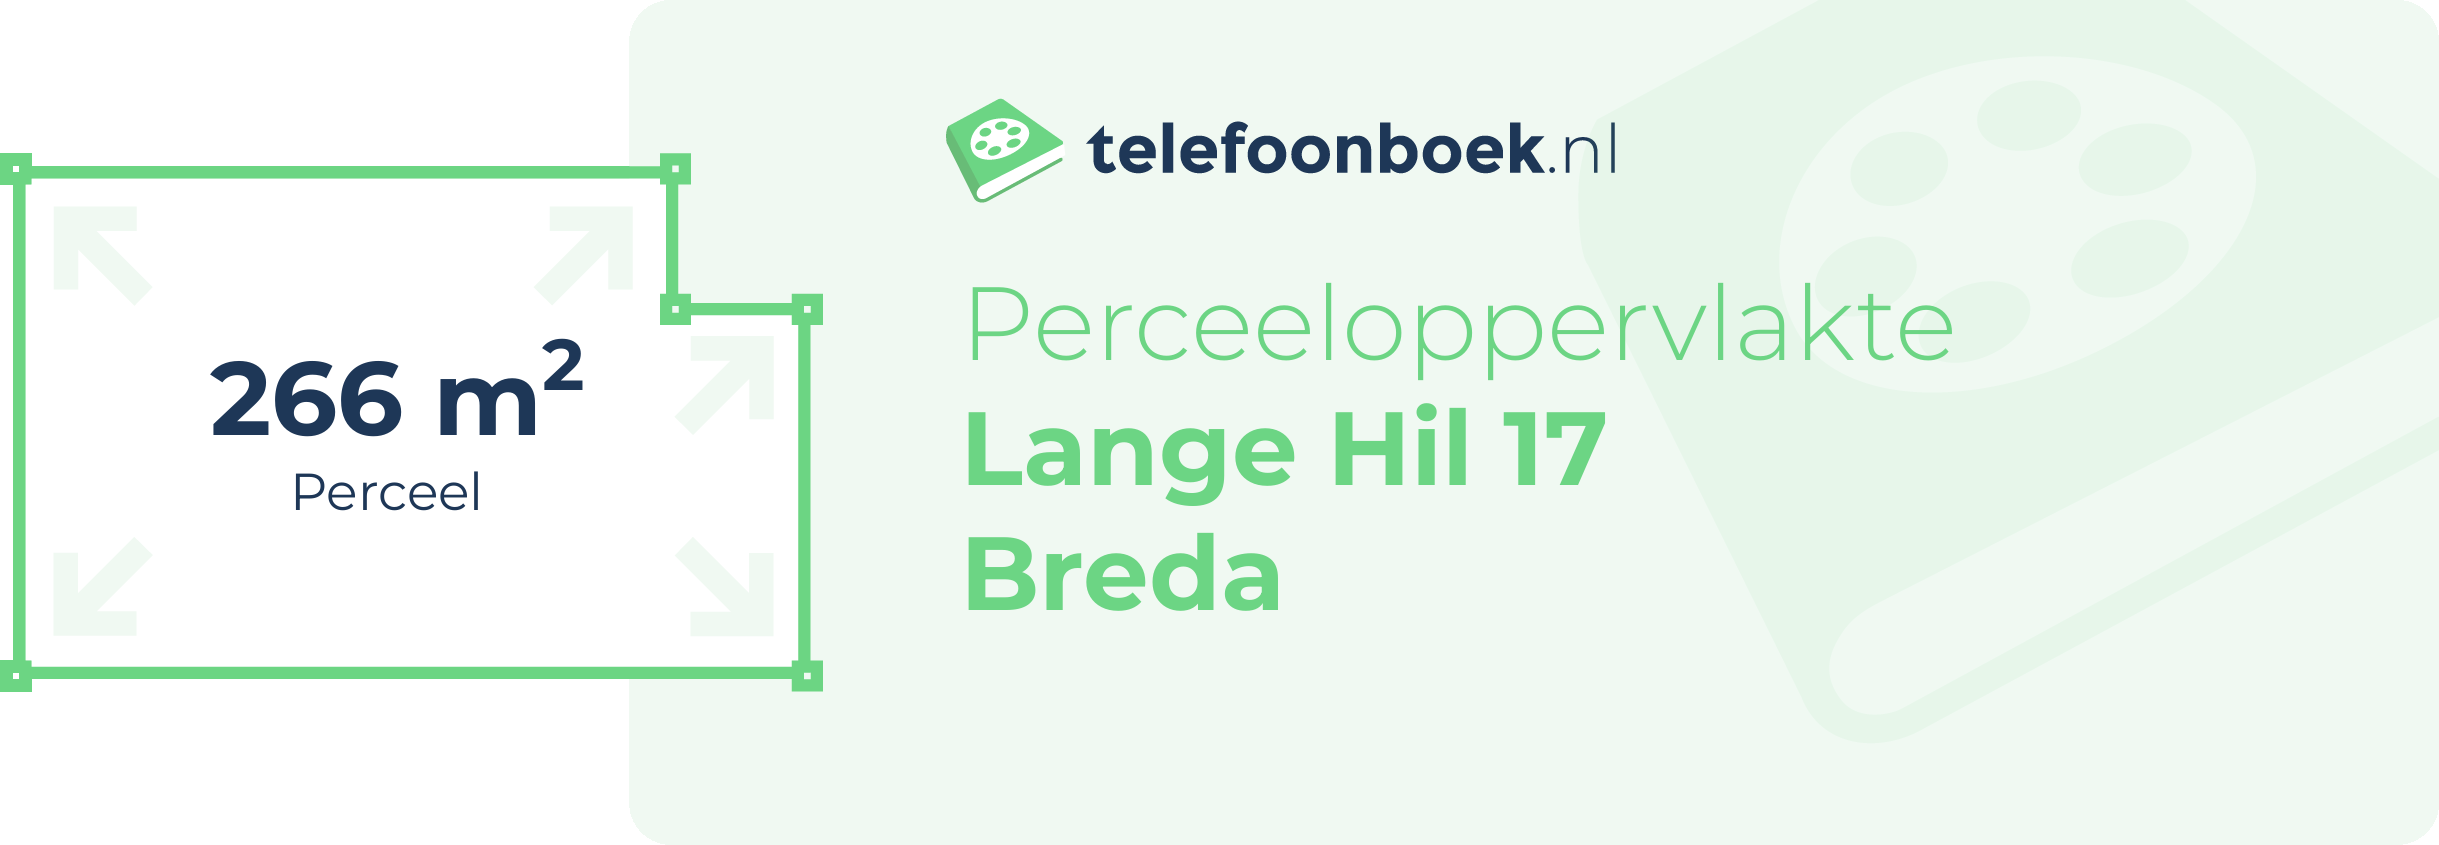 Perceeloppervlakte Lange Hil 17 Breda